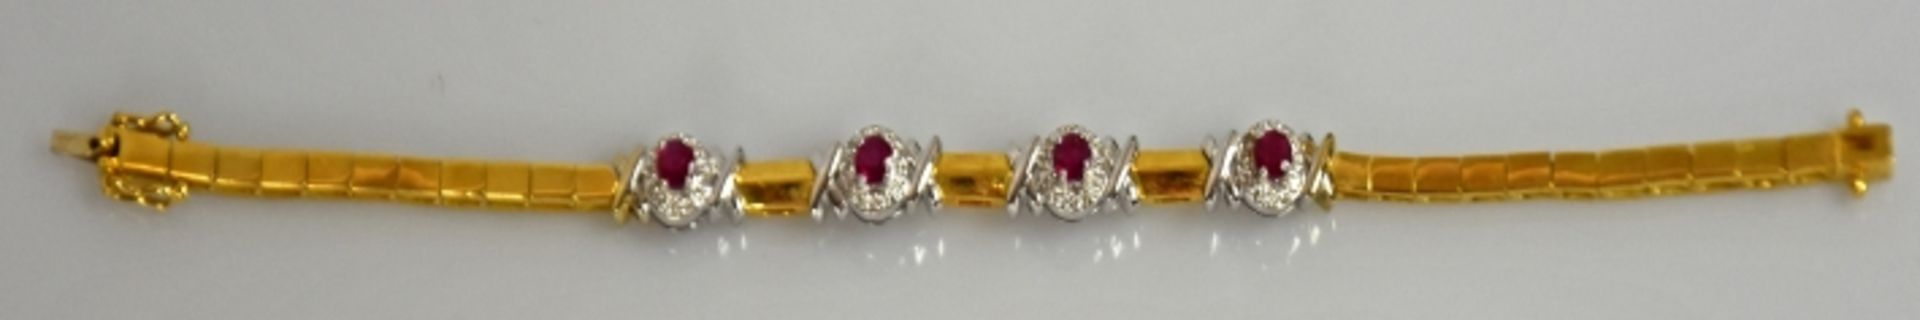 ARMBAND schmal, besetzt mit 4 geschliffenen Rubinen jeweils umgeben von Diamanten, seitlich - Bild 2 aus 2